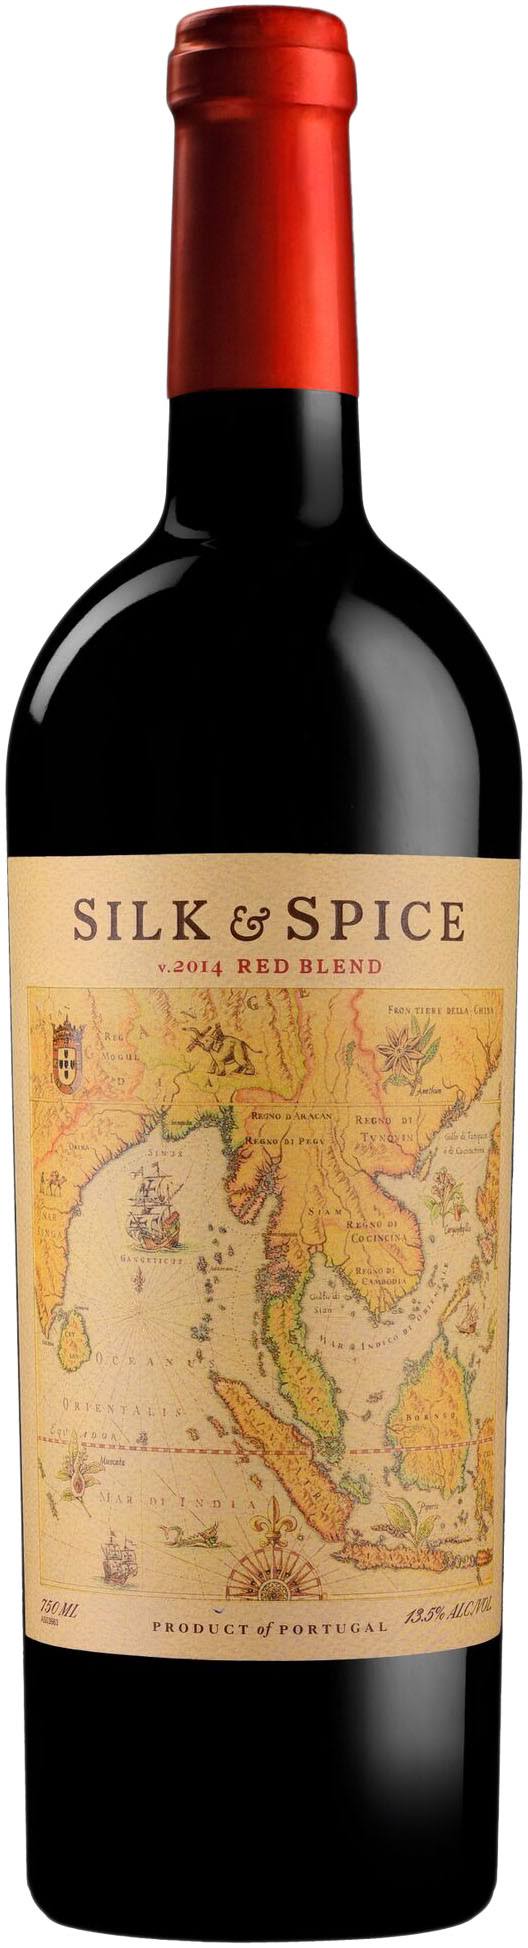 Silk & Spice Red Blend 750 ml bottle